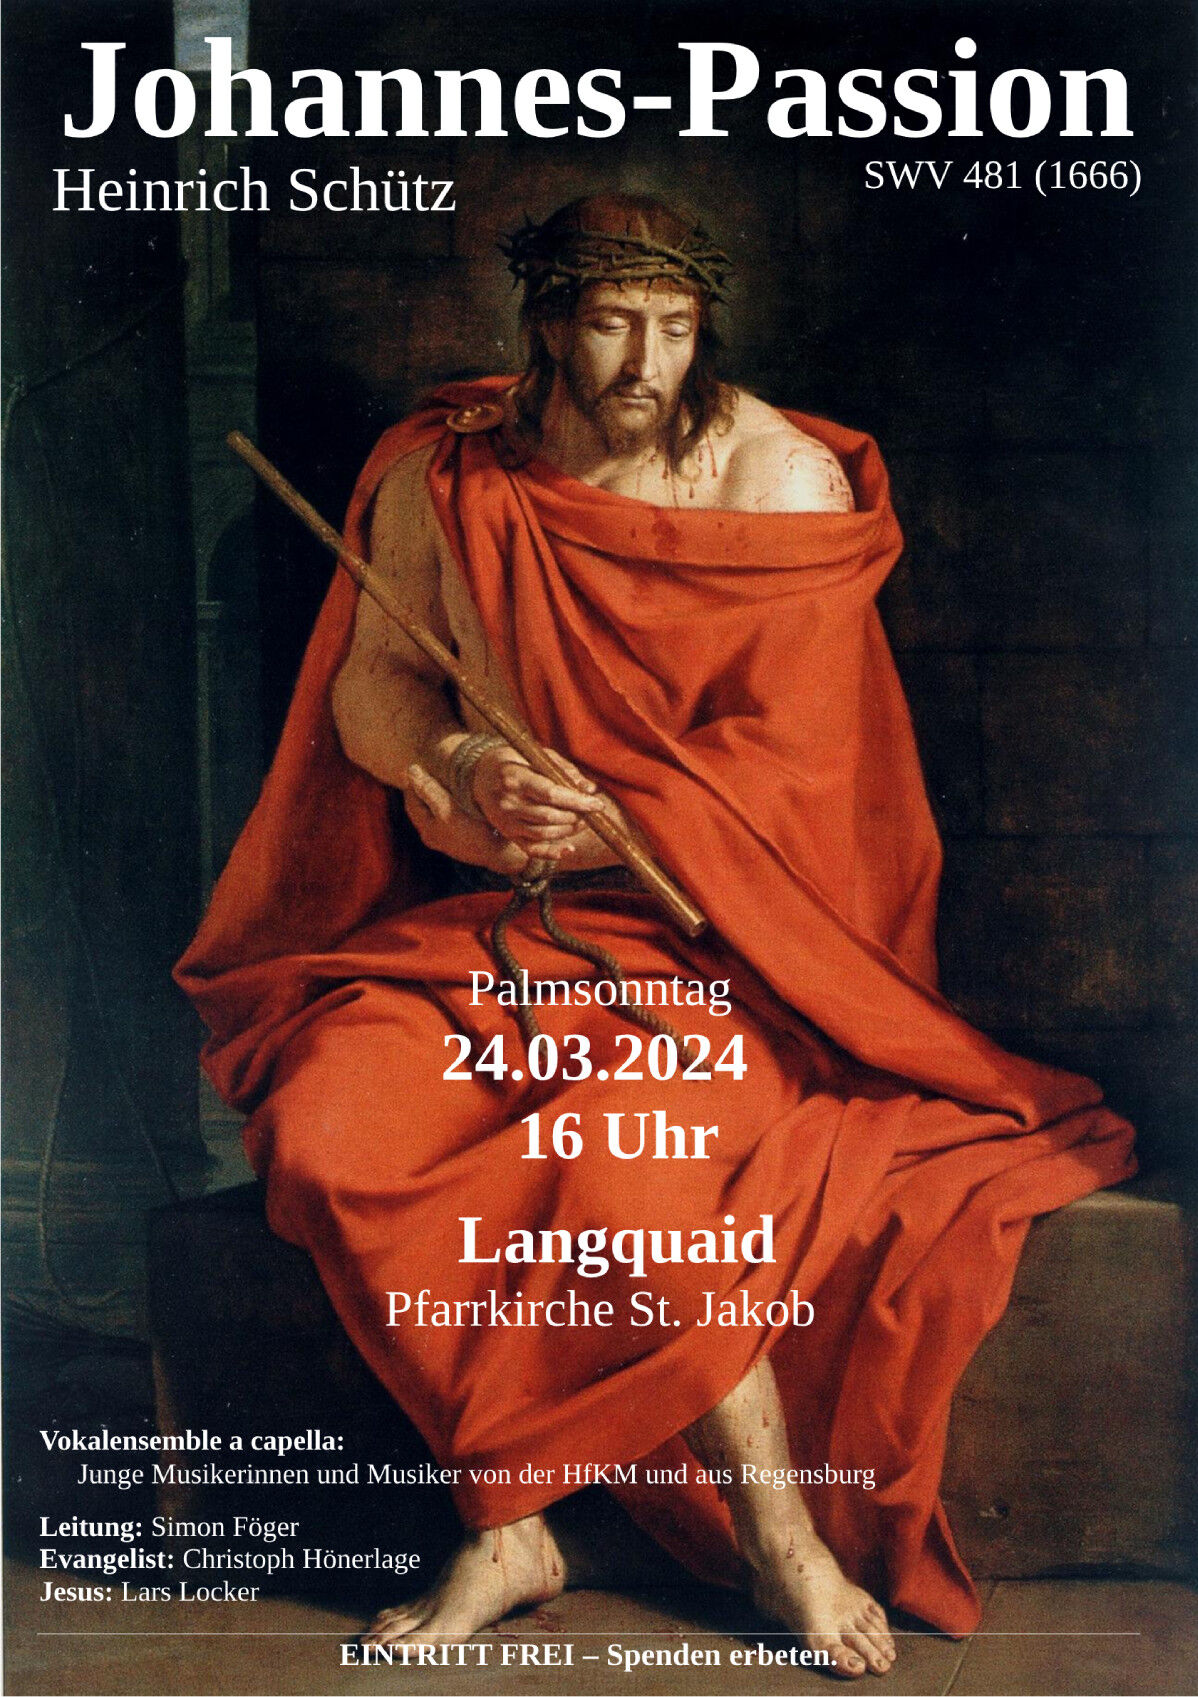 Die Passionsmusik ist am Palmsonntag 24. März 2024, um 16:00 Uhr in der Pfarrkirche St. Jakob in Langquaid zu hören.